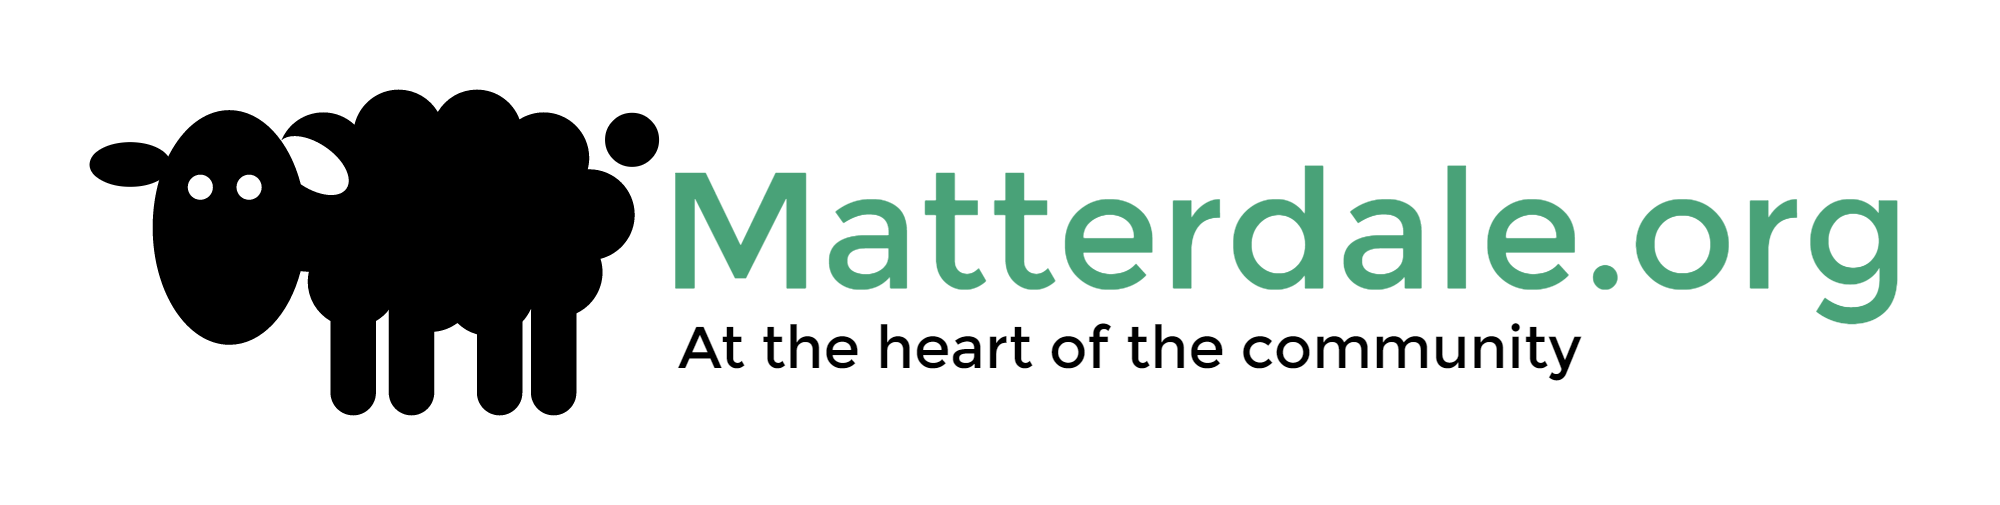 Matterdale.org-logo (1).png